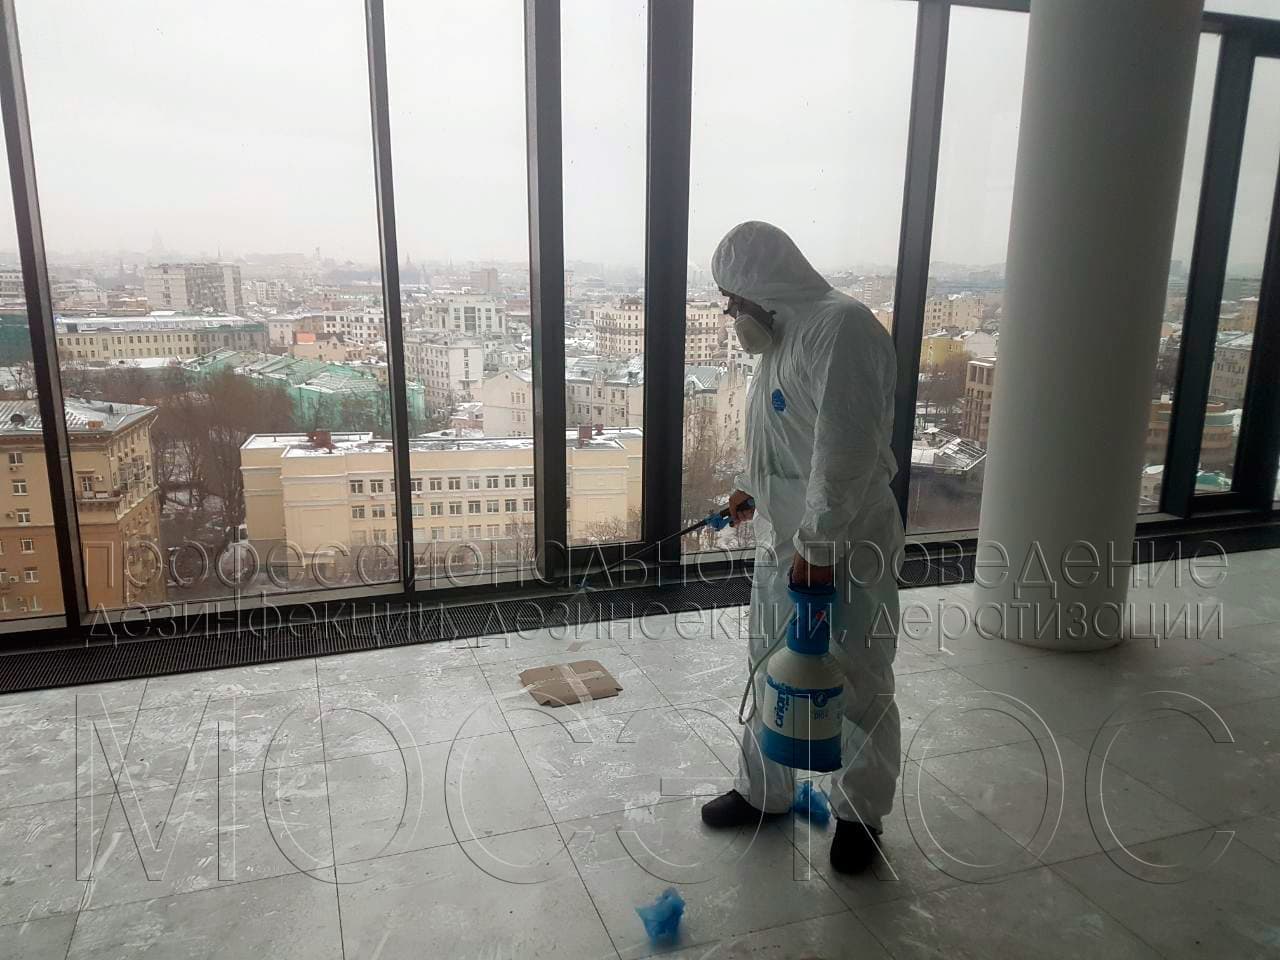 Клопы в отелях, гостиницах в Москве: что делать?